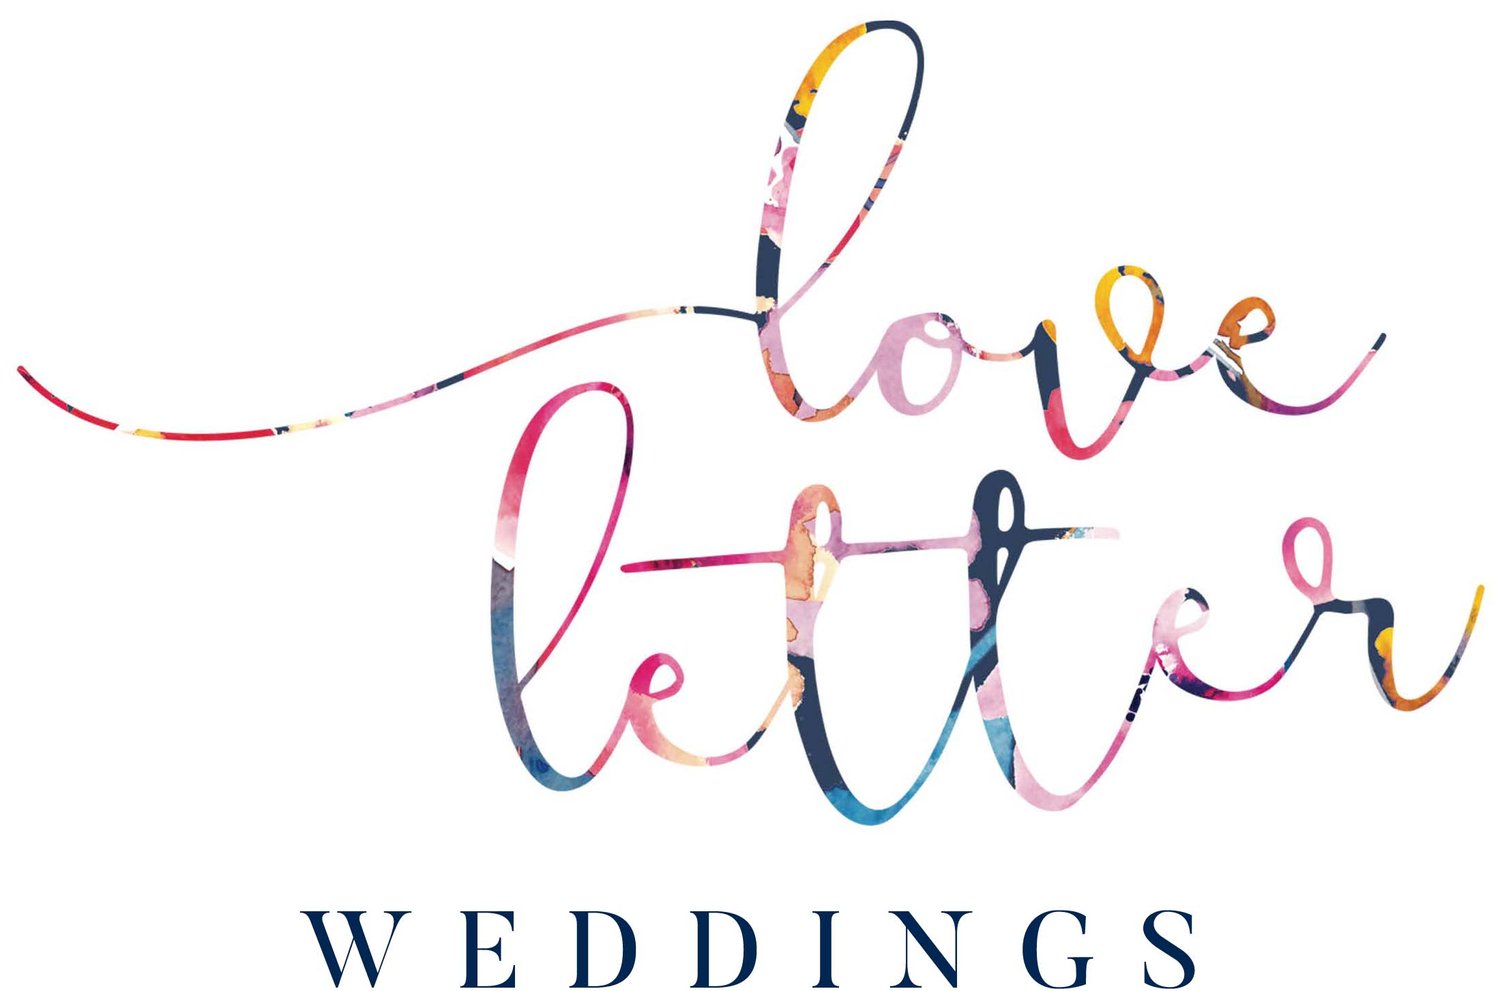 Love Letter Weddings